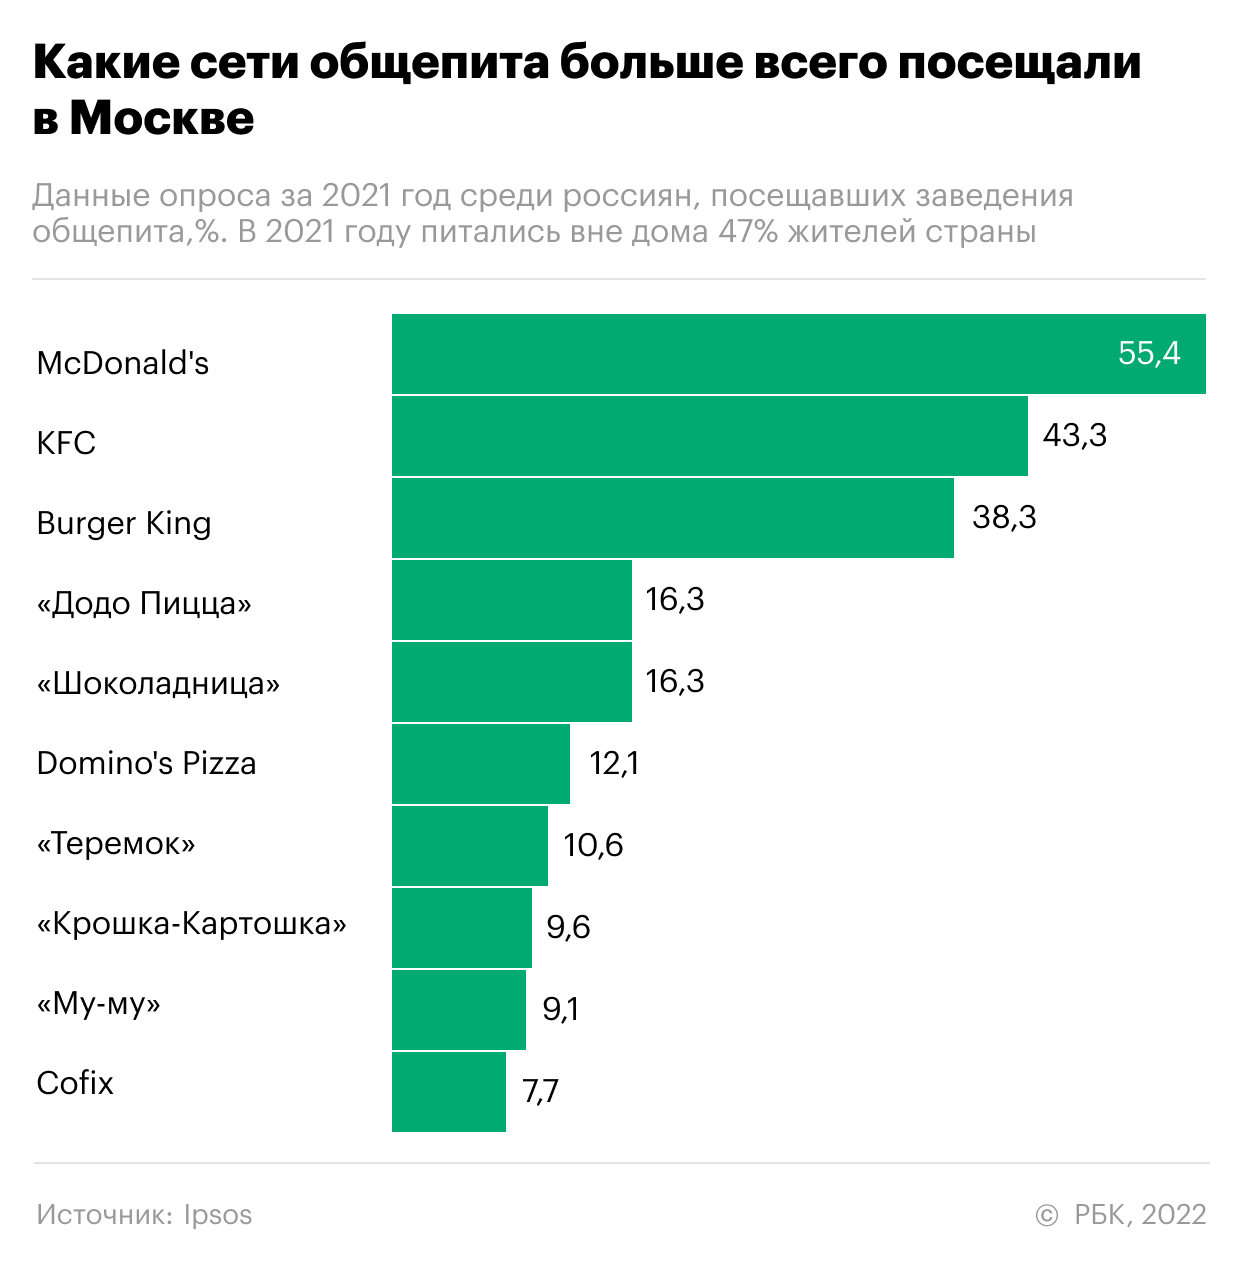 Самый популярный общепит у россиян. Инфографика